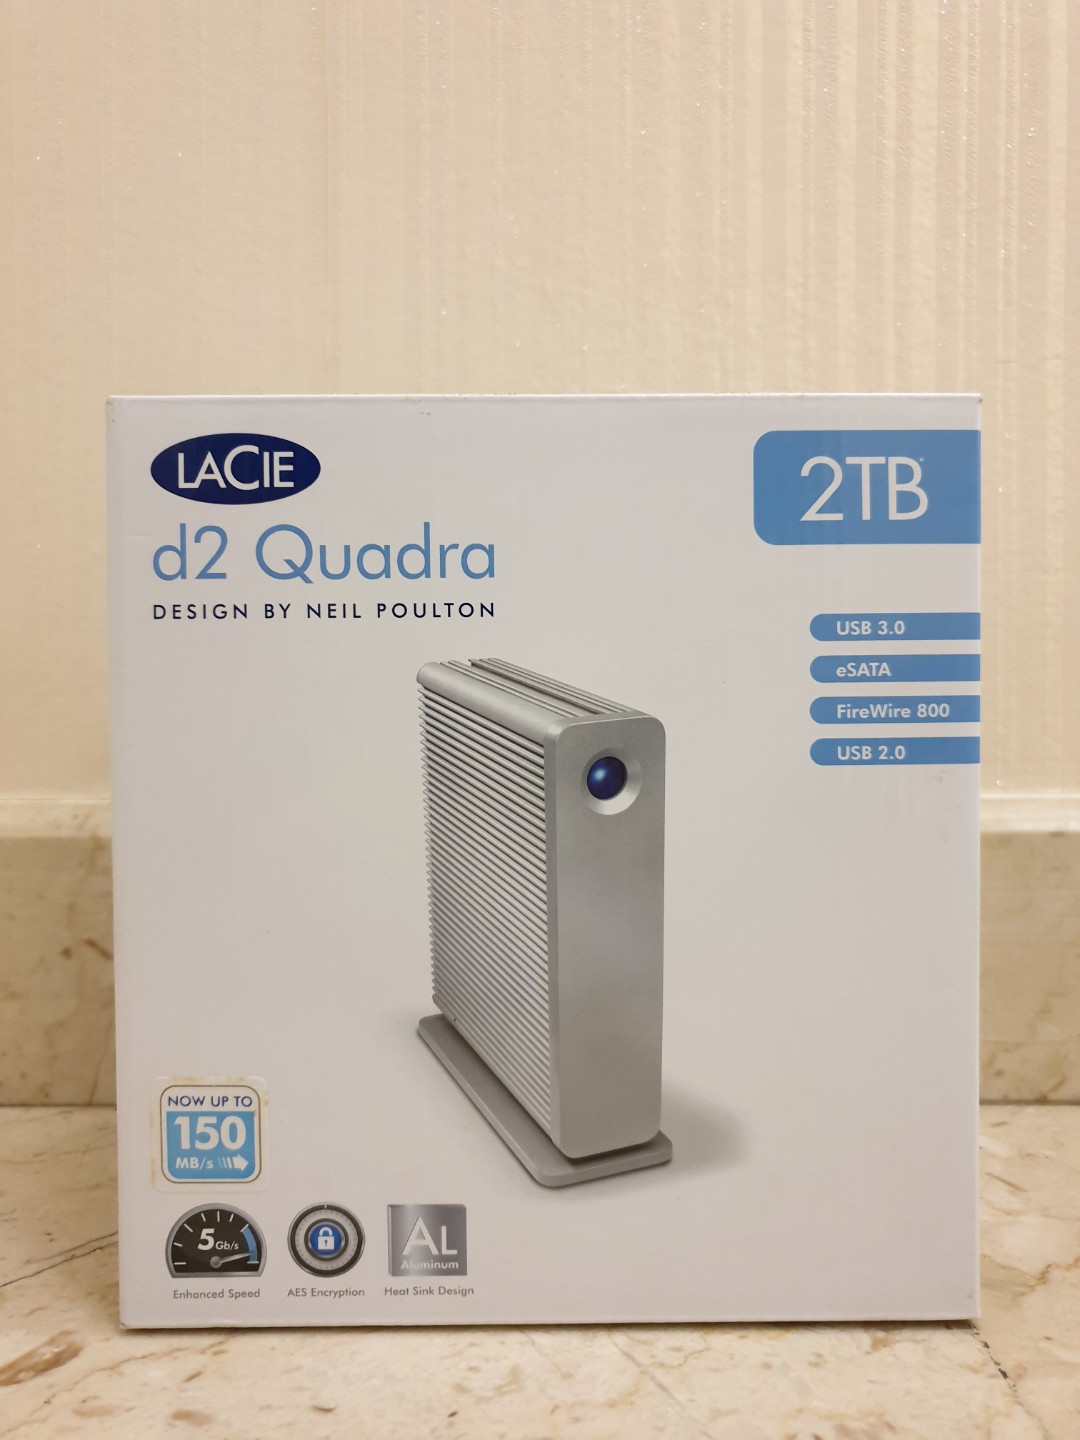 LaCie d2 Quadra USB 3.0 FireWire 800 ESata // 2TB hard drive ...